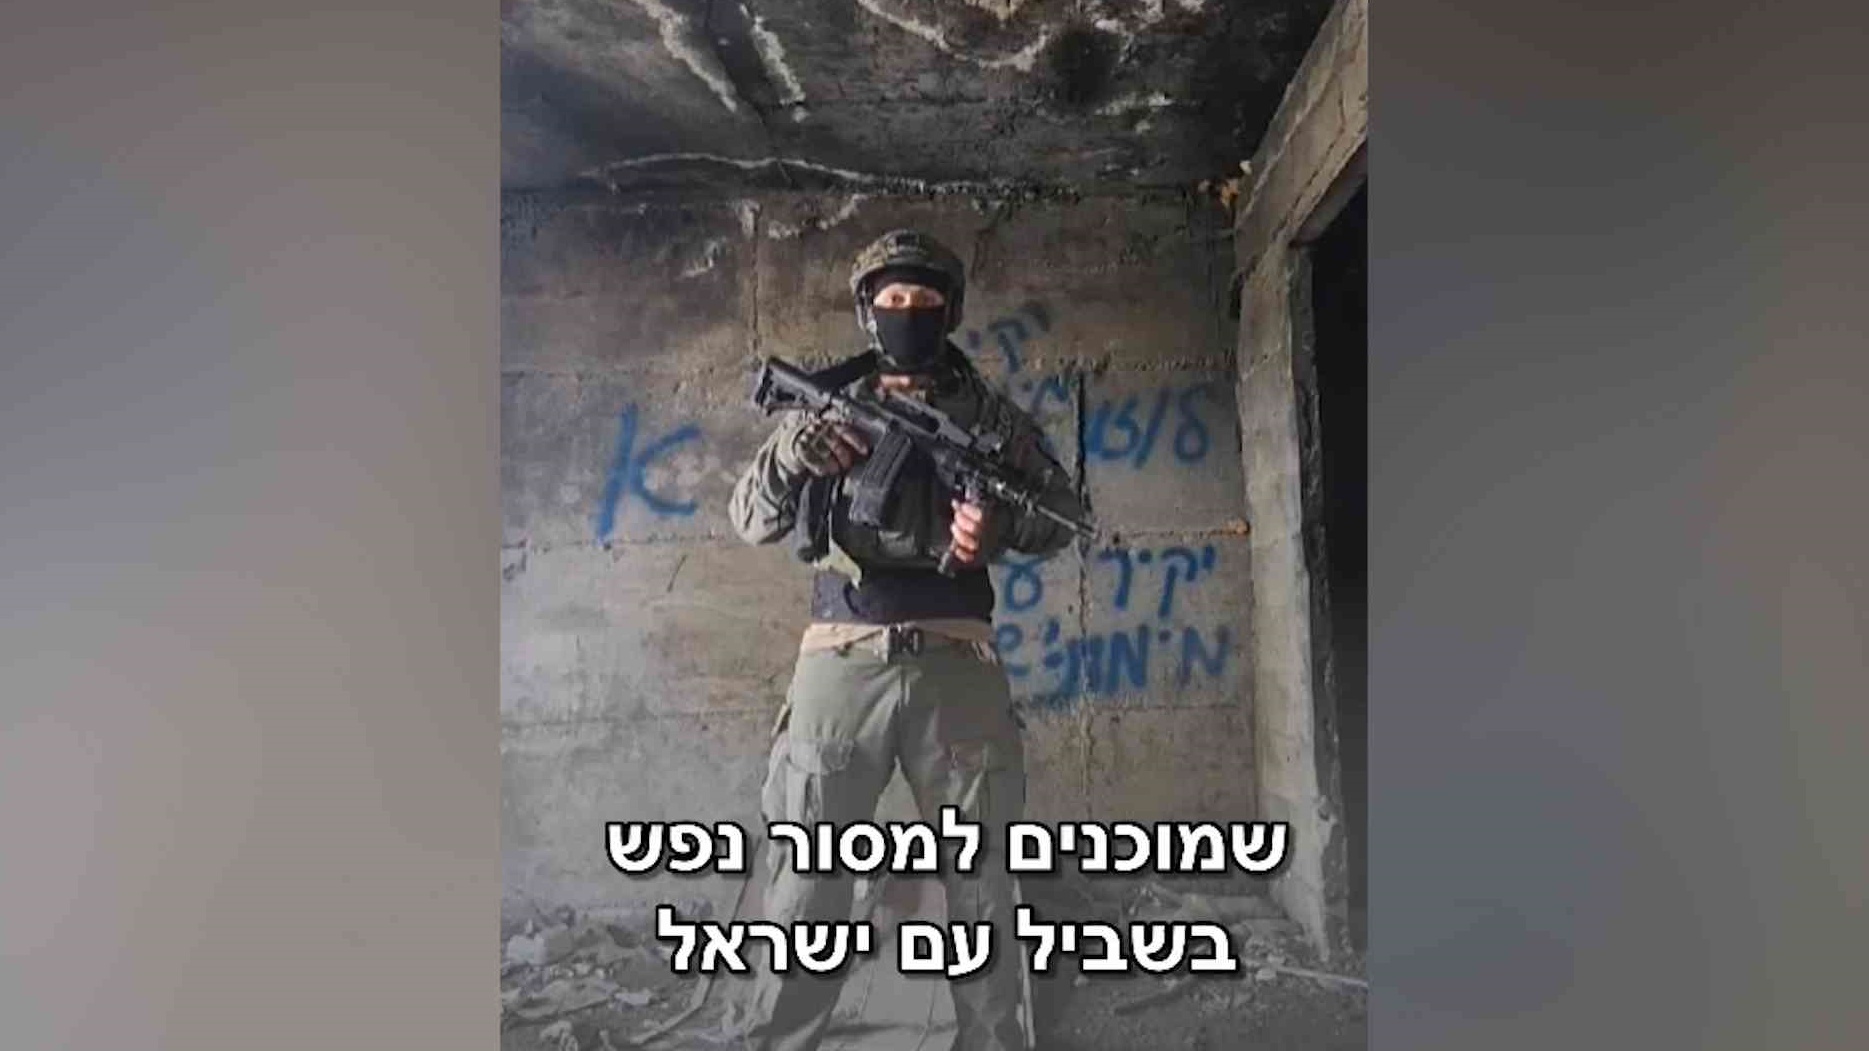 فيديو الجندي المتمرد يثير ضجة في اسرائيل 